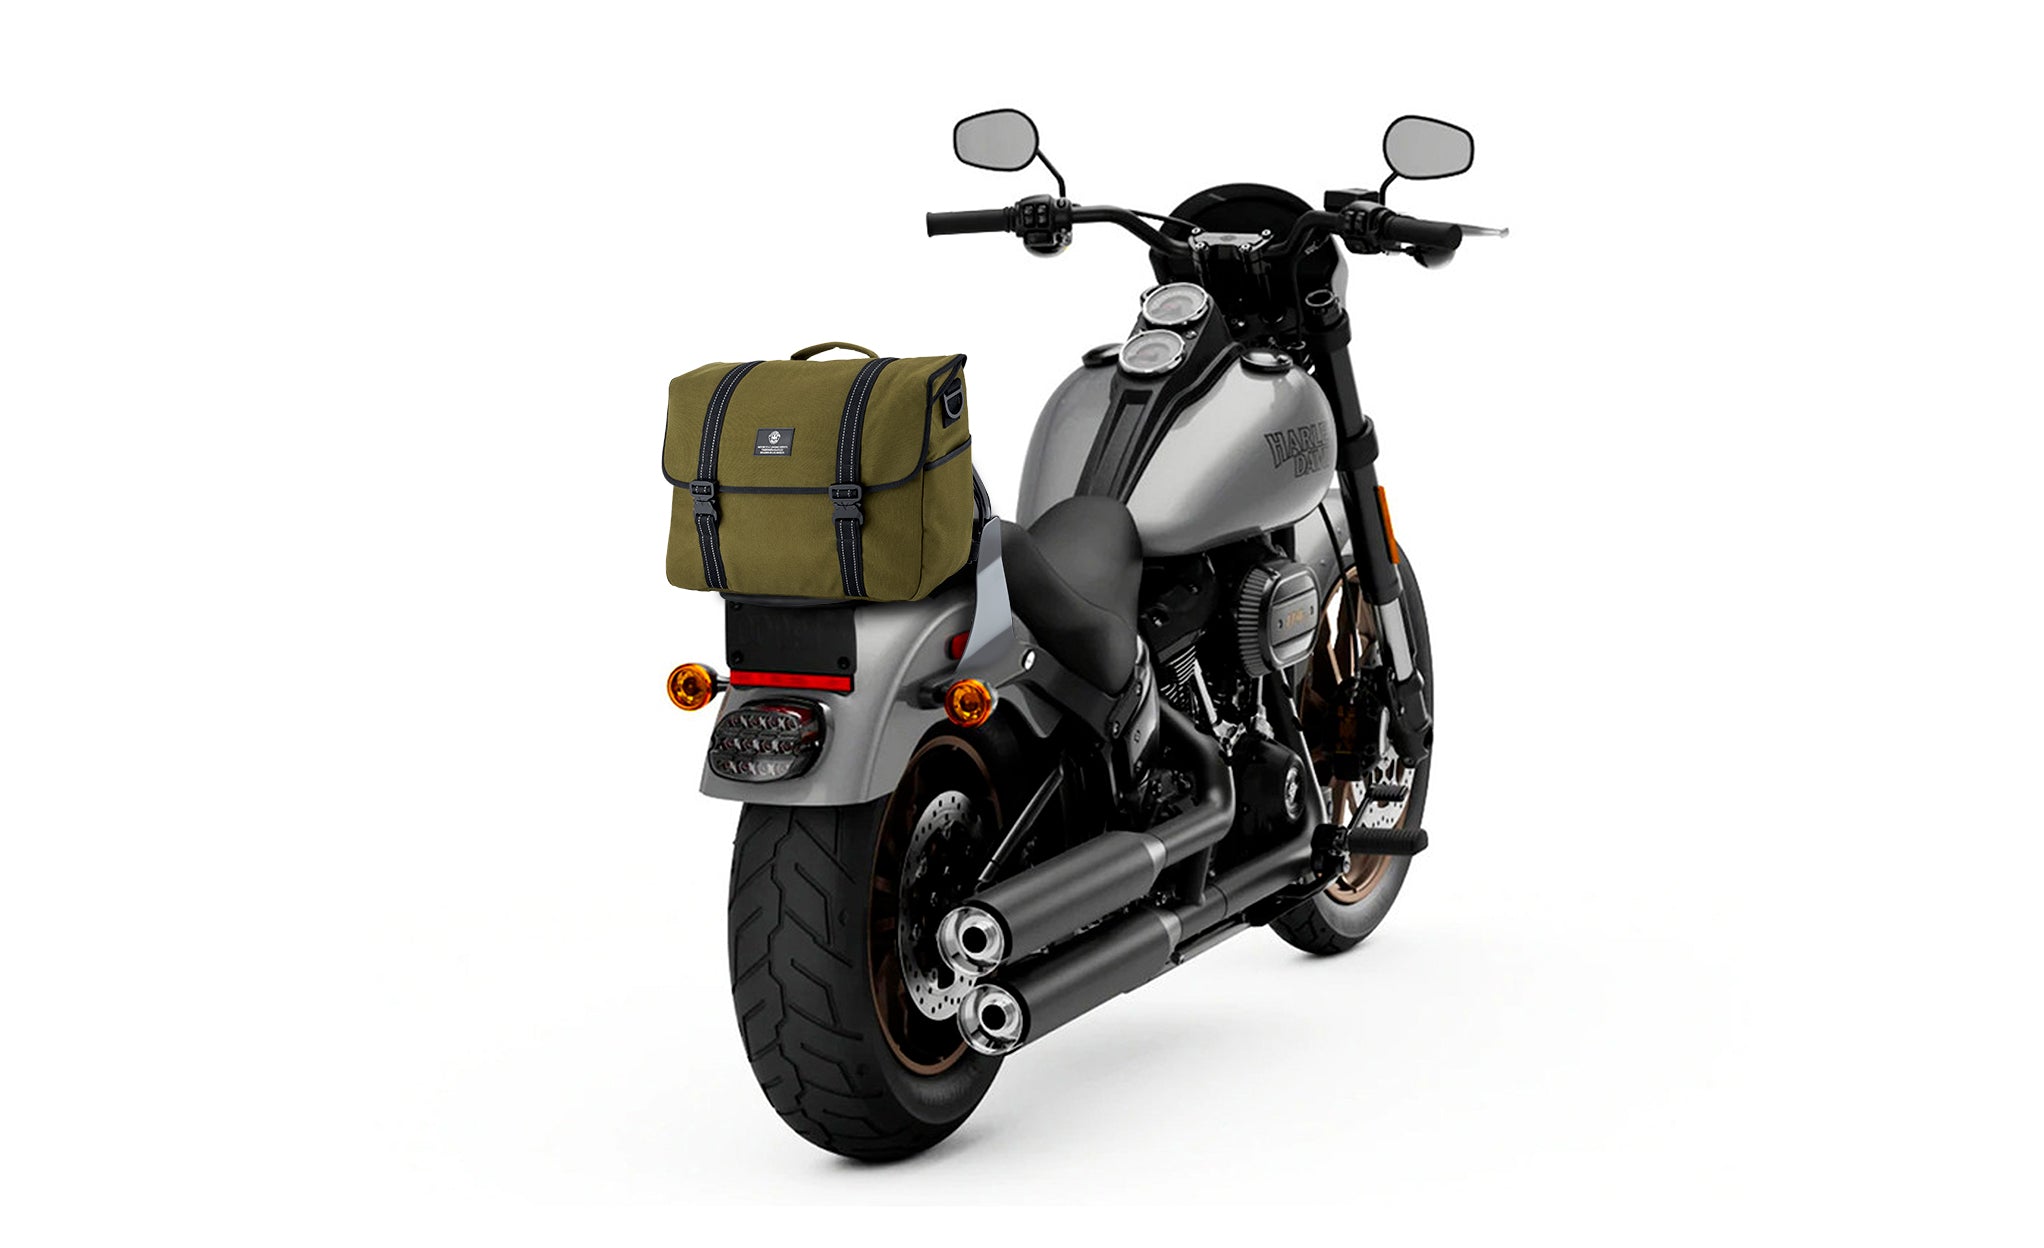 Viking Duo-tone Medium Motorcycle Messenger Bag for Harley Davidson Green/Black Bag on Bike View @expand